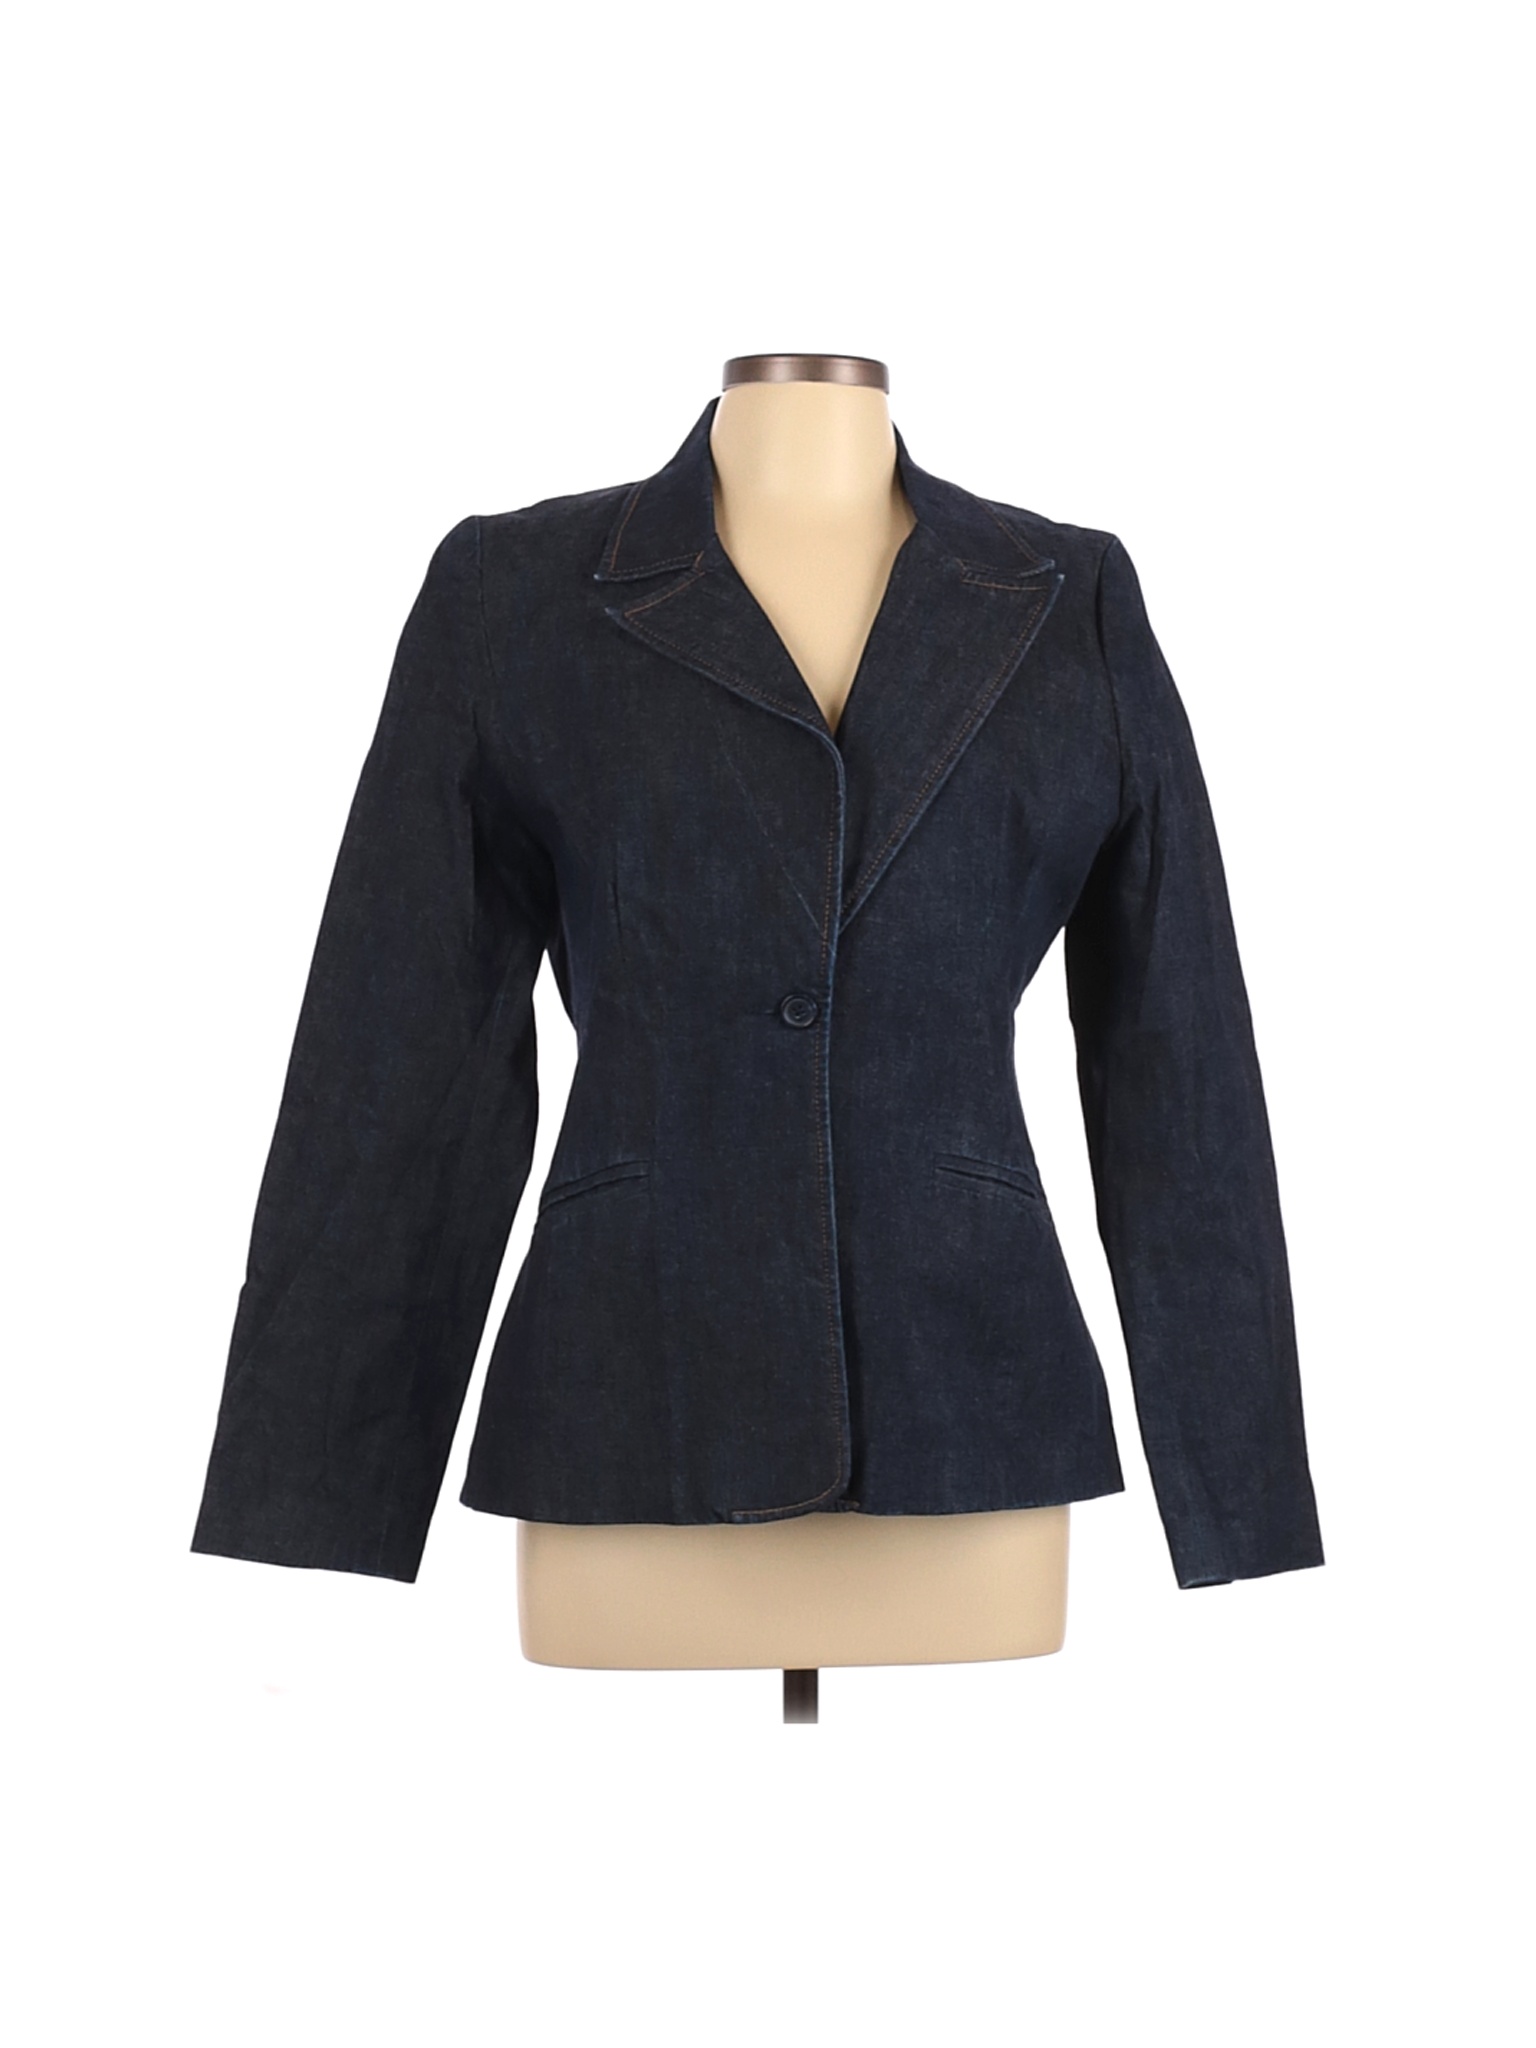 Old Navy Women Black Denim Jacket L | eBay